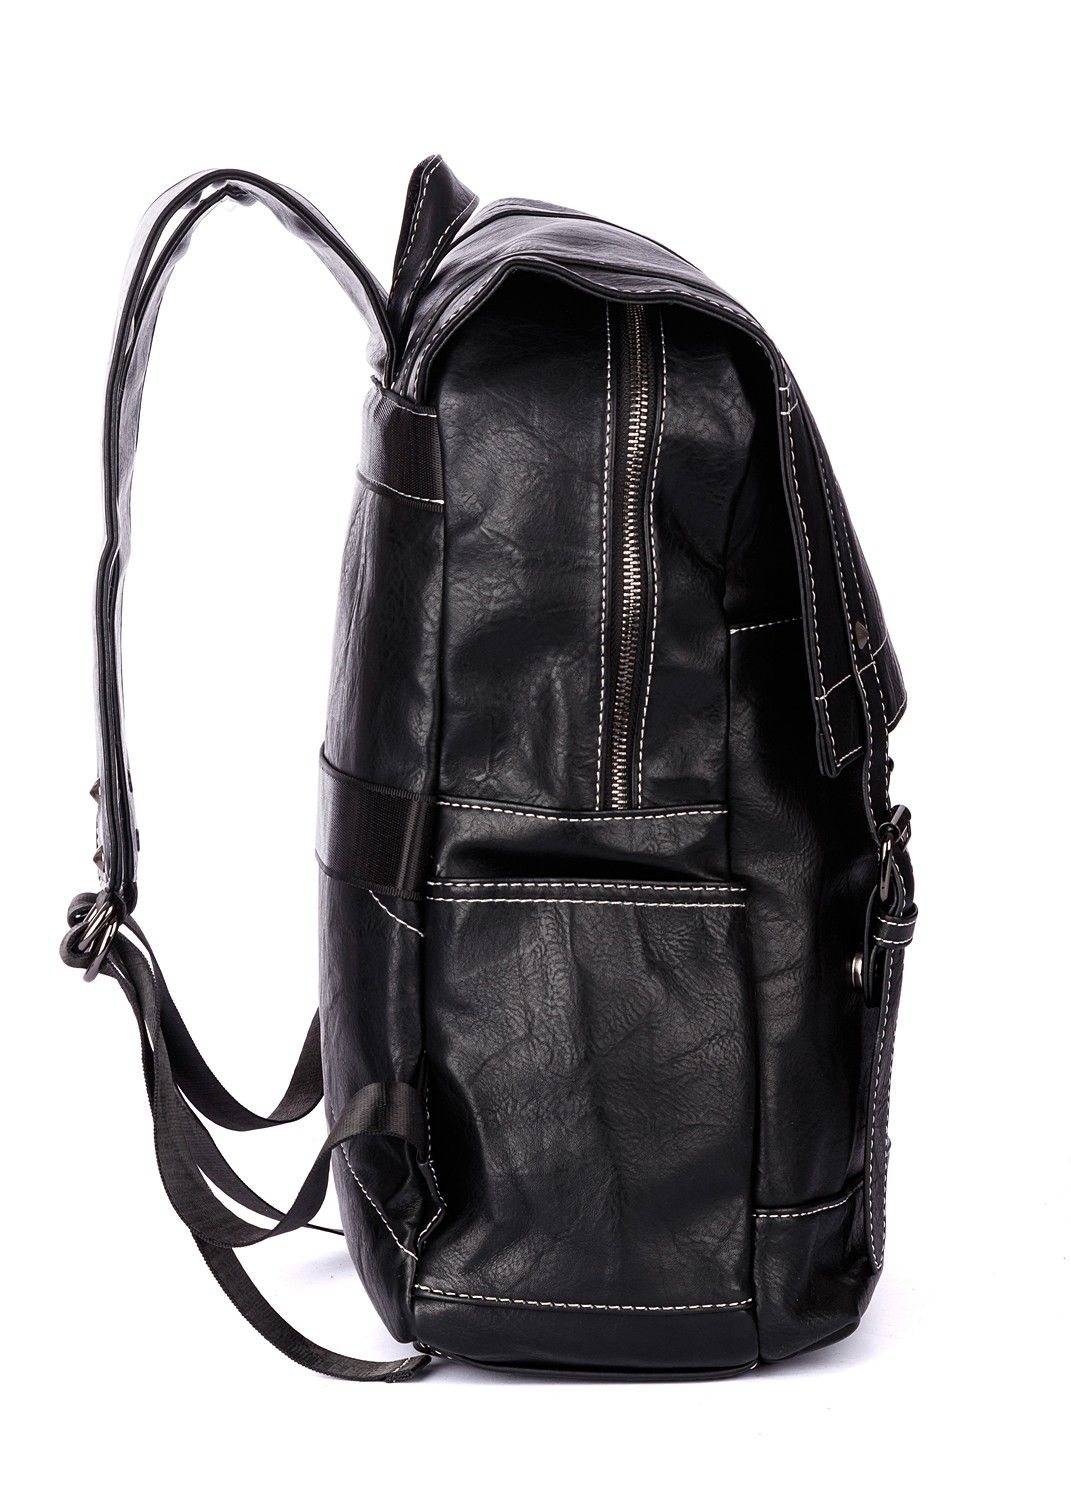 Рюкзак мужской / женский городской из искусственной кожи, черный, с широкими лямками, объем 13л